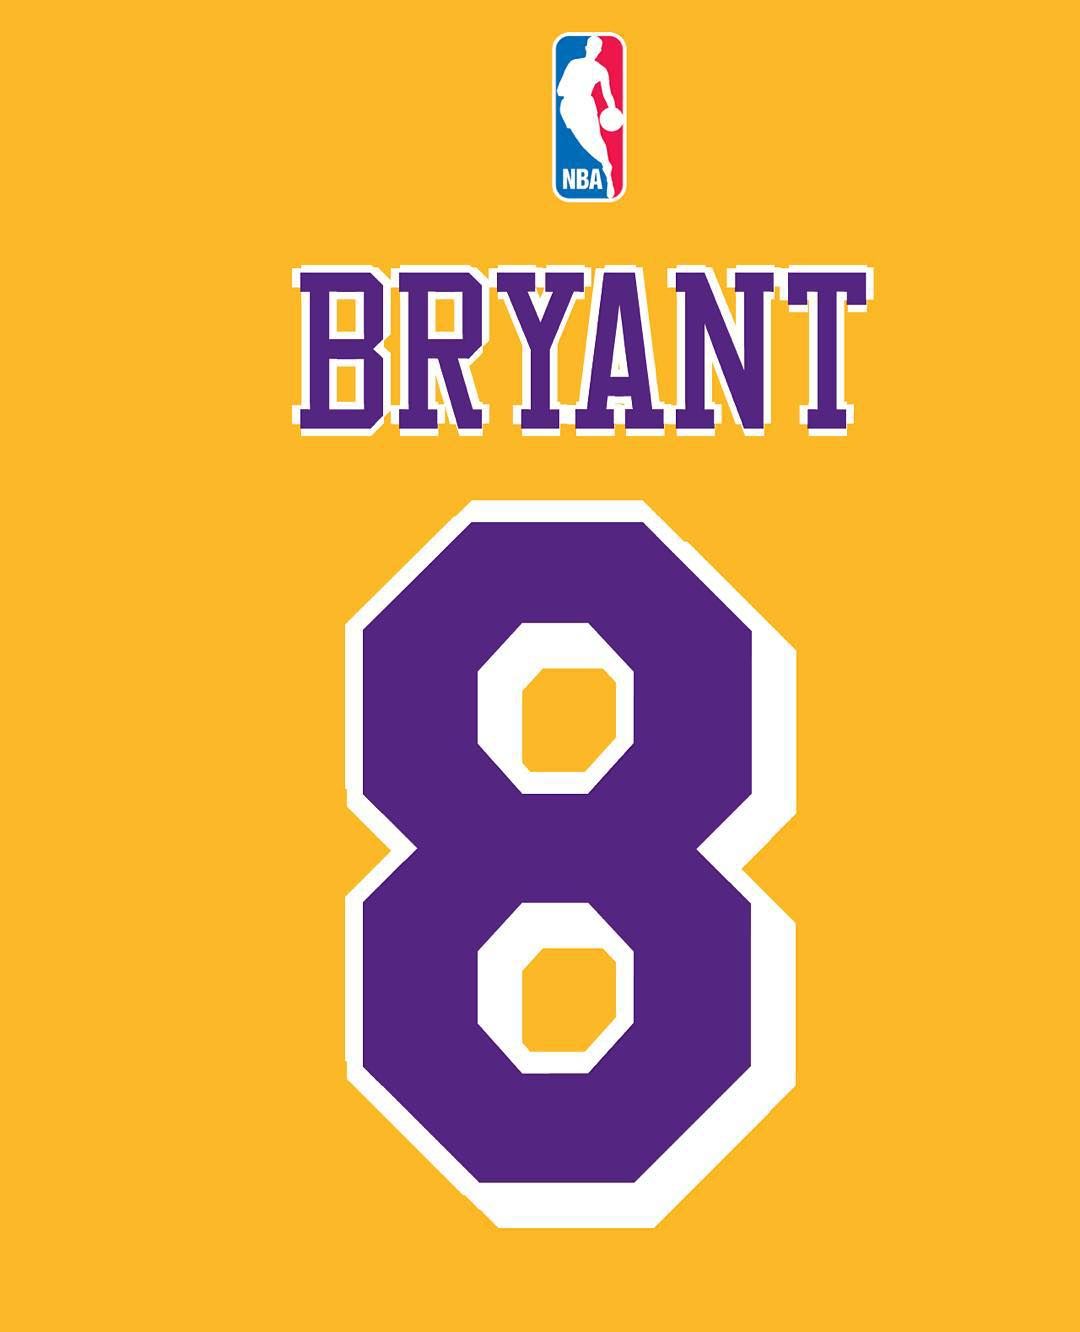 Kobe Bryant. Kobe bryant, Kobe bryant nba, Lakers kobe